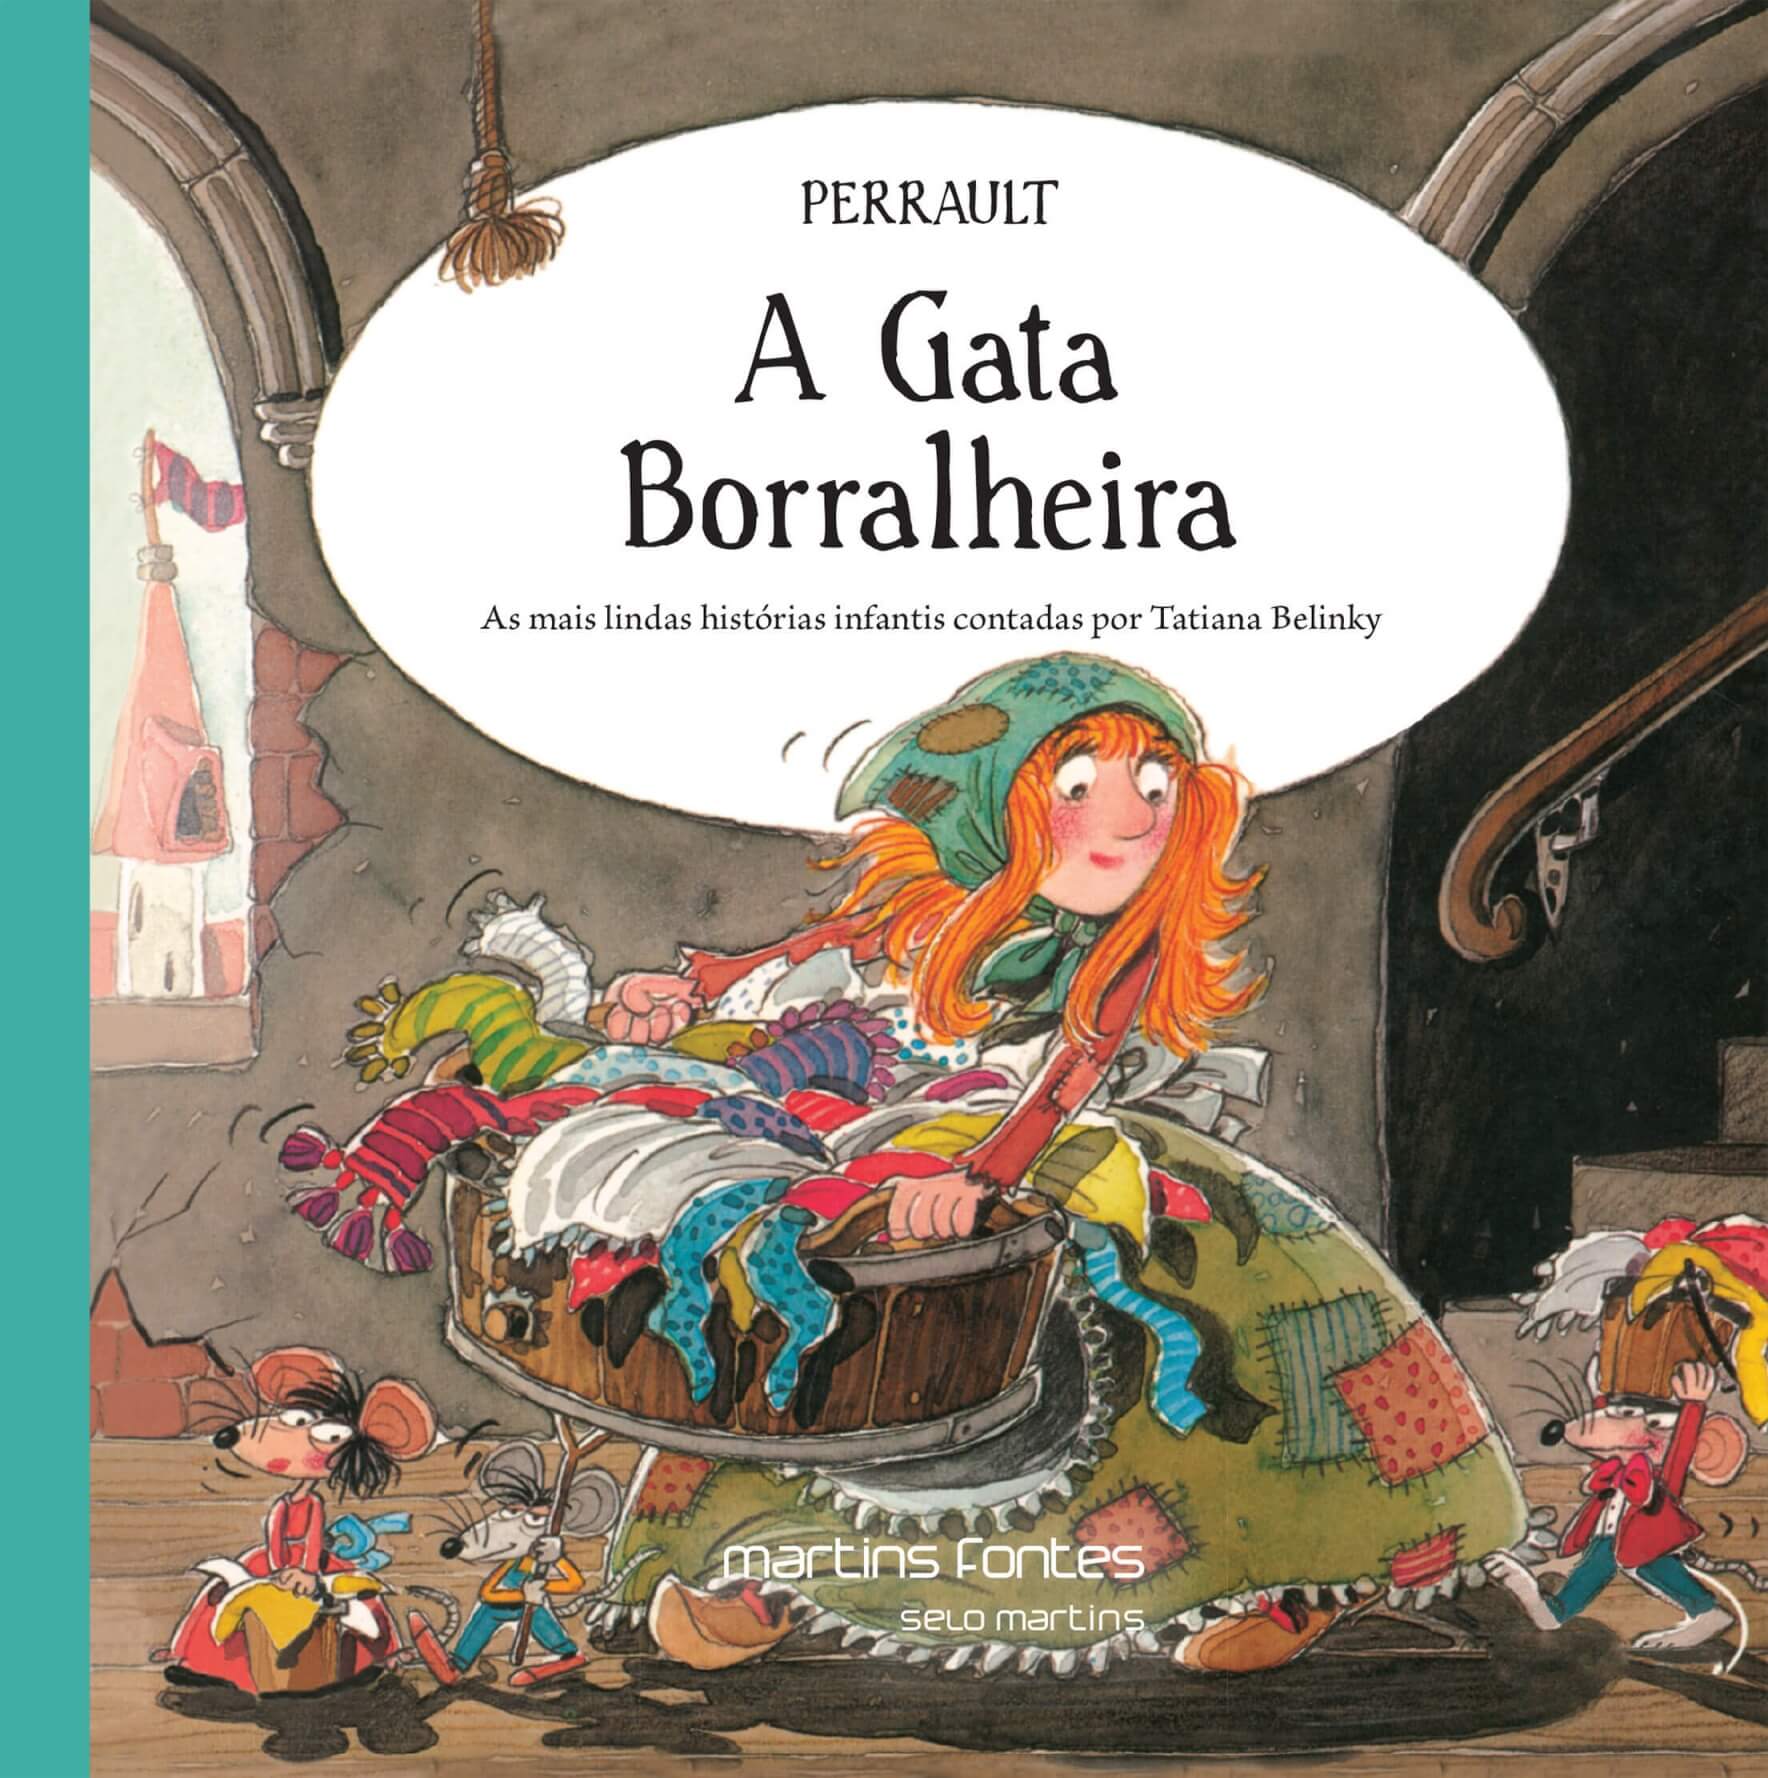 Gata borralheira, A  - As mais lindas histórias infantis contadas por Tatiana Belinky  - Martins Fontes